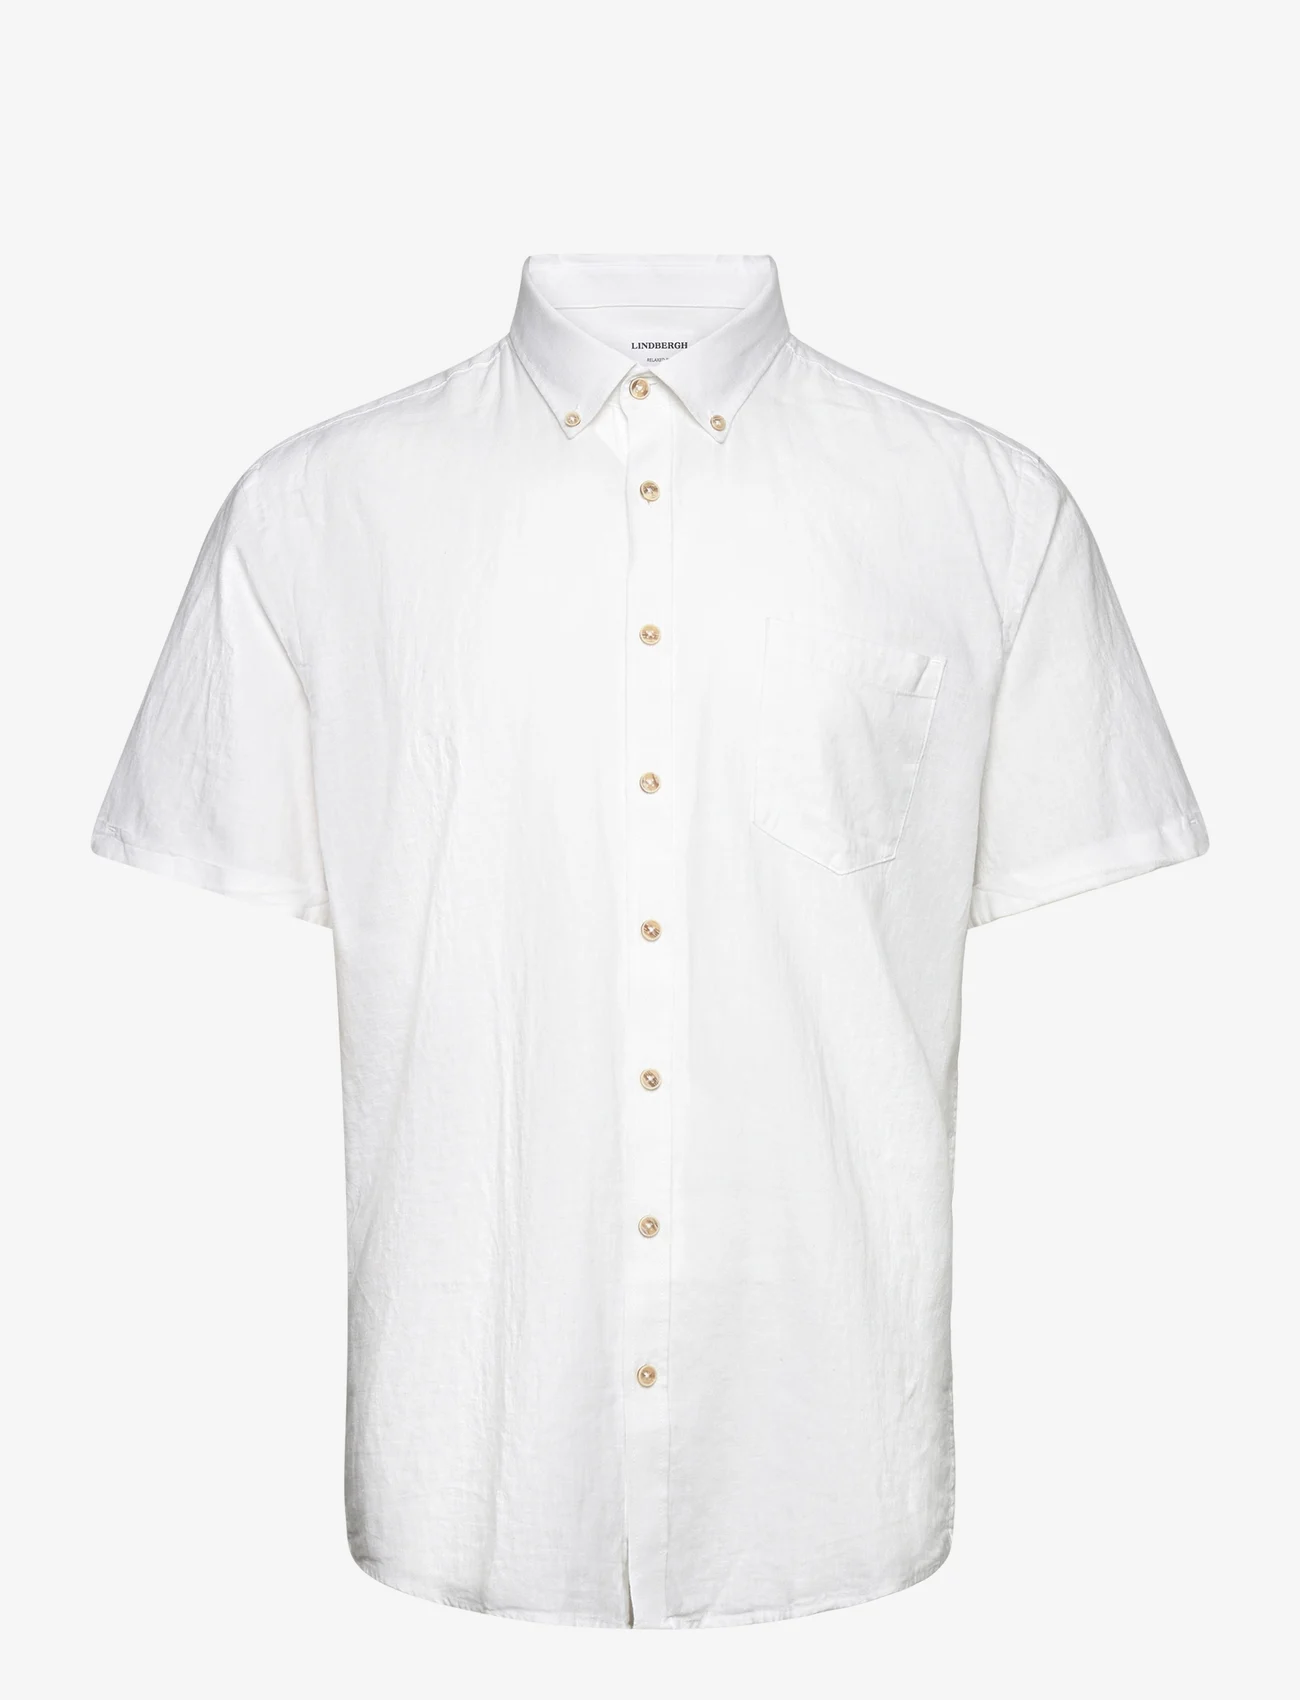 Lindbergh - Cotton/linen shirt S/S - linskjorter - white - 0